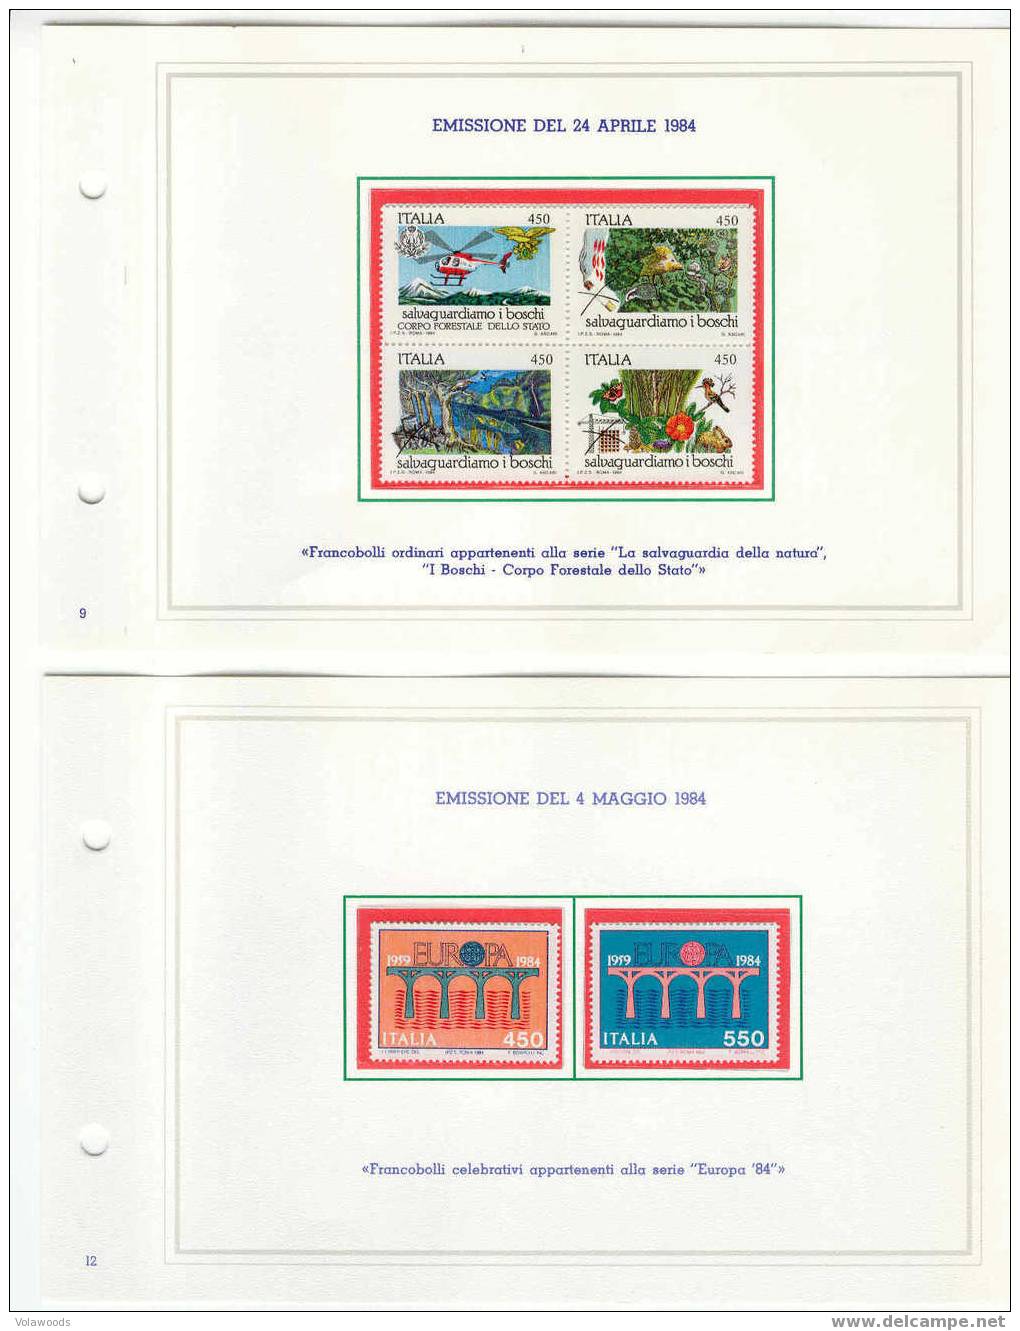 Italia - Annata Completa 1984 In Libretto Delle Poste Completo Di Tutte Le Carte Valori Emesse (con Interi Postali) - Vollständige Jahrgänge